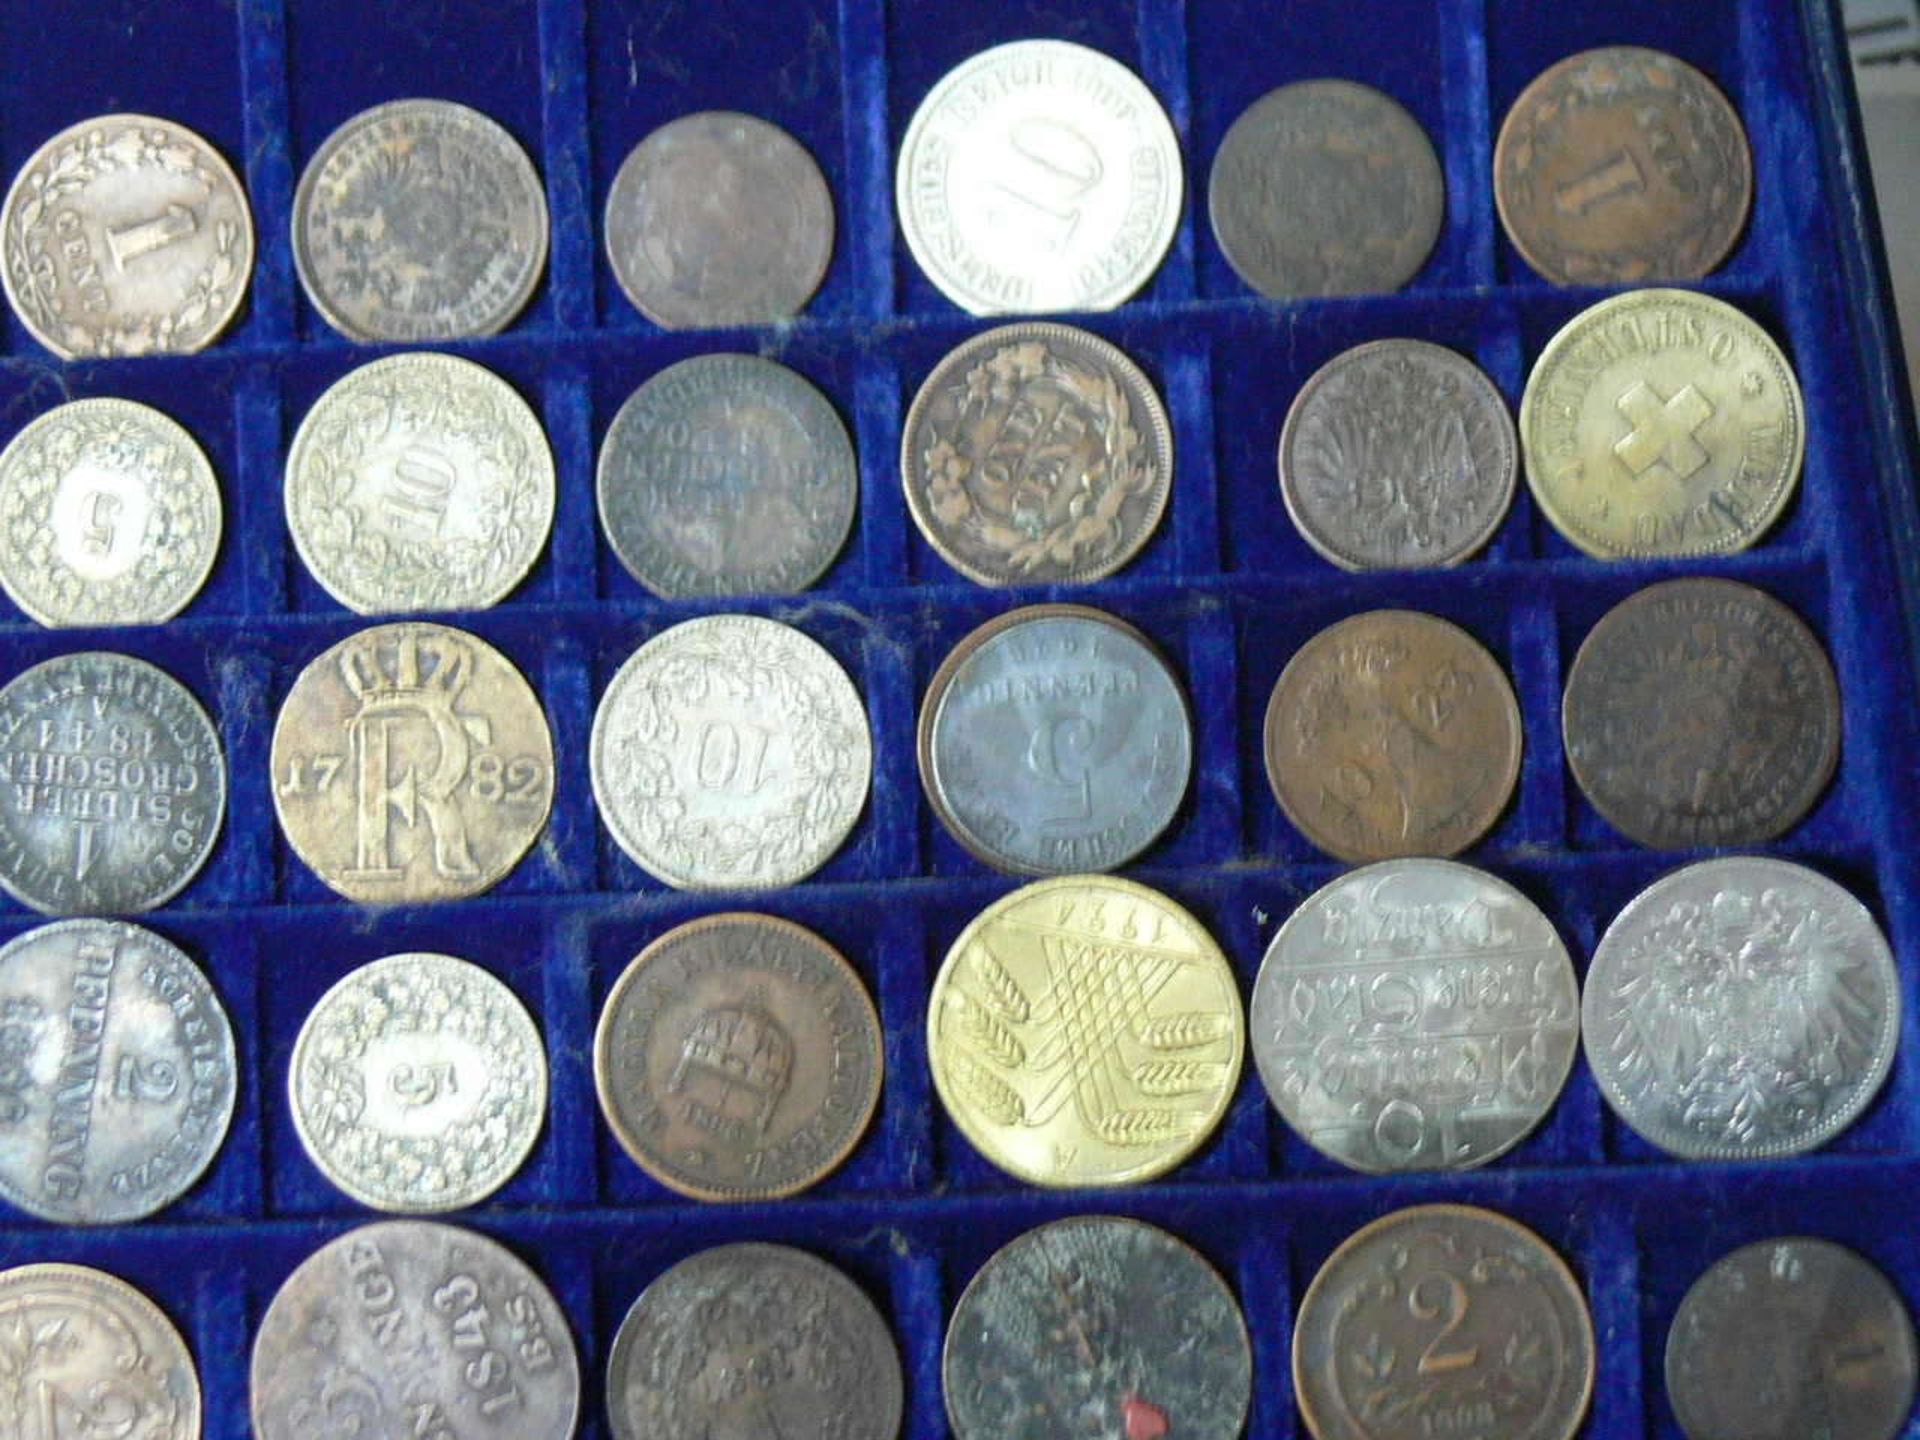 Großes Lot alte Münzen aus aller Welt aus dem 17. bis 19. Jahrhundert. Über 100 Stück. Darunter u. - Bild 4 aus 6